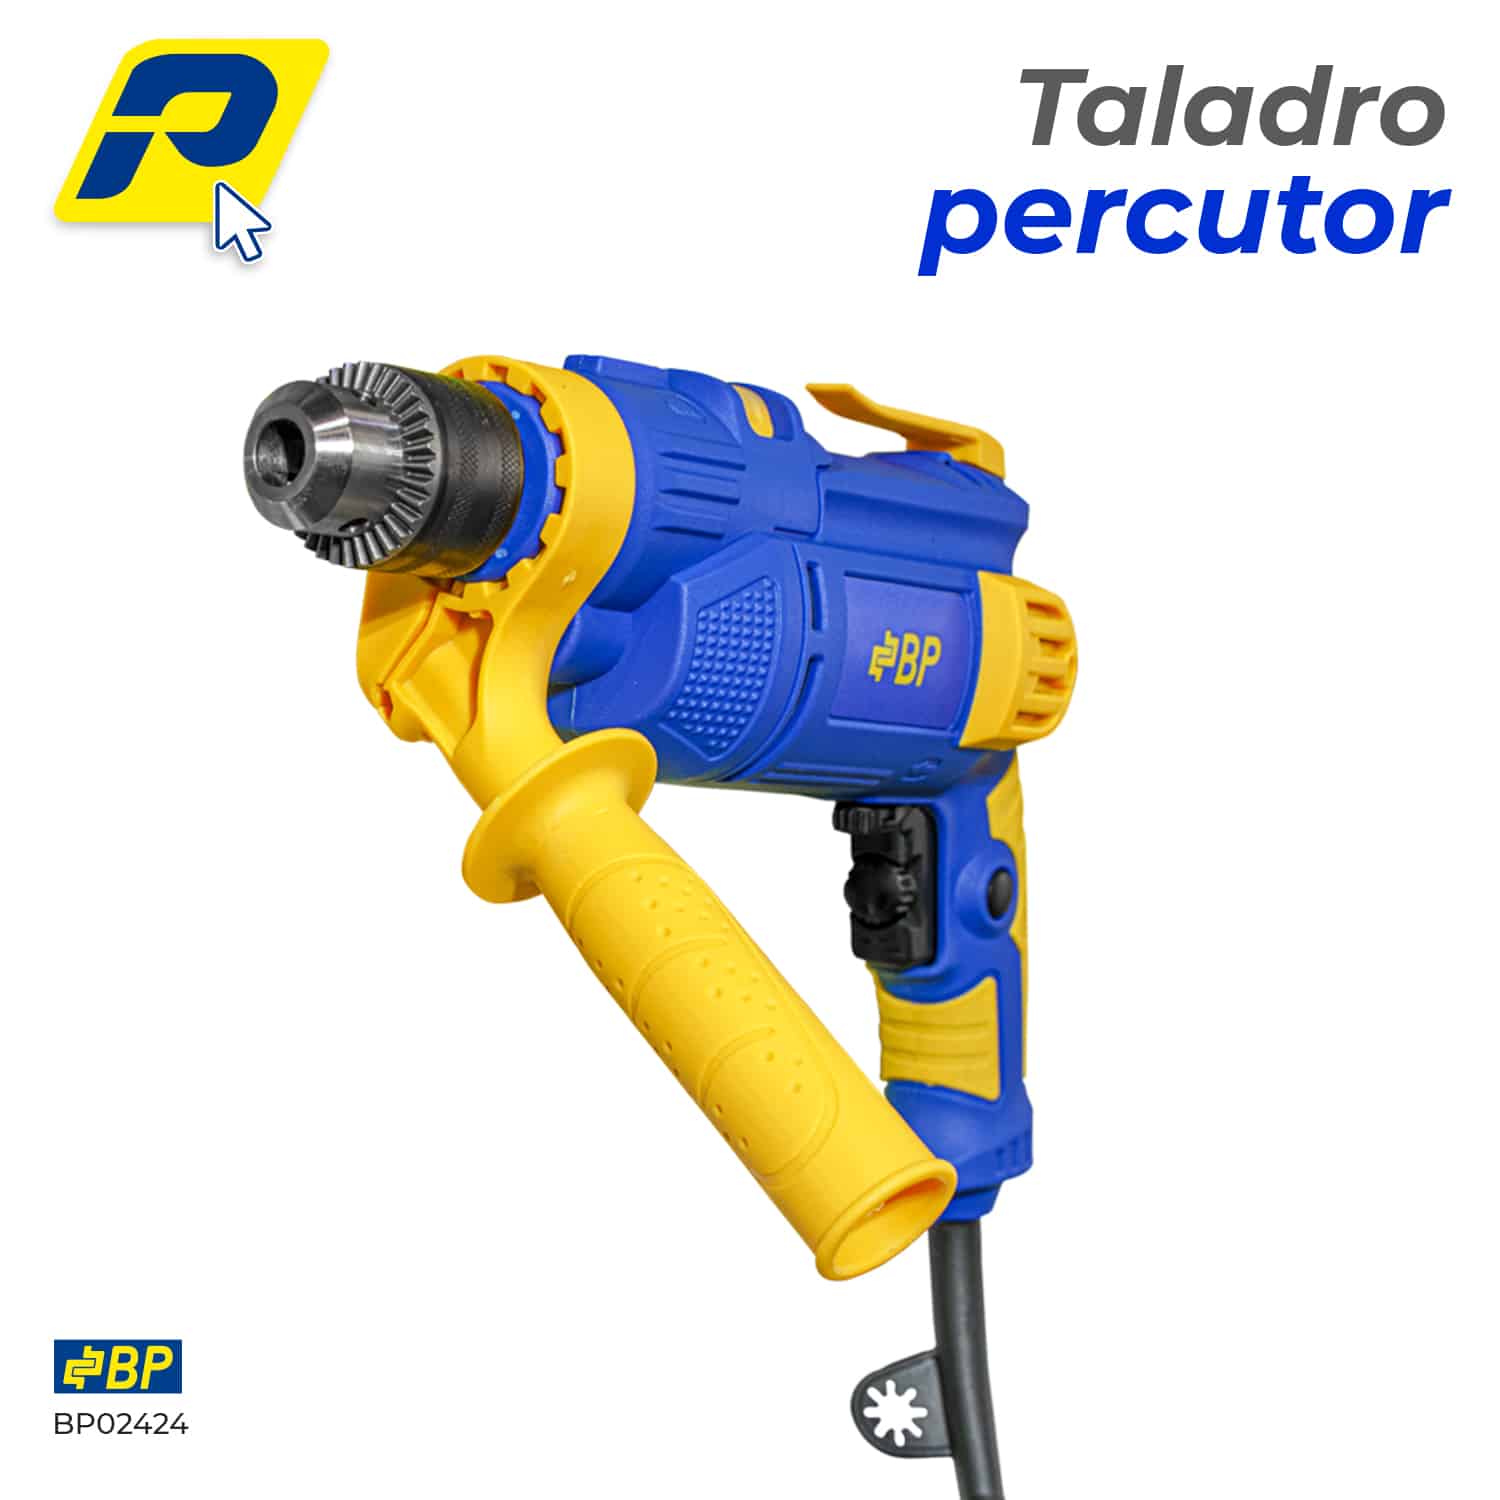 Taladro percutor BP02424 1 1